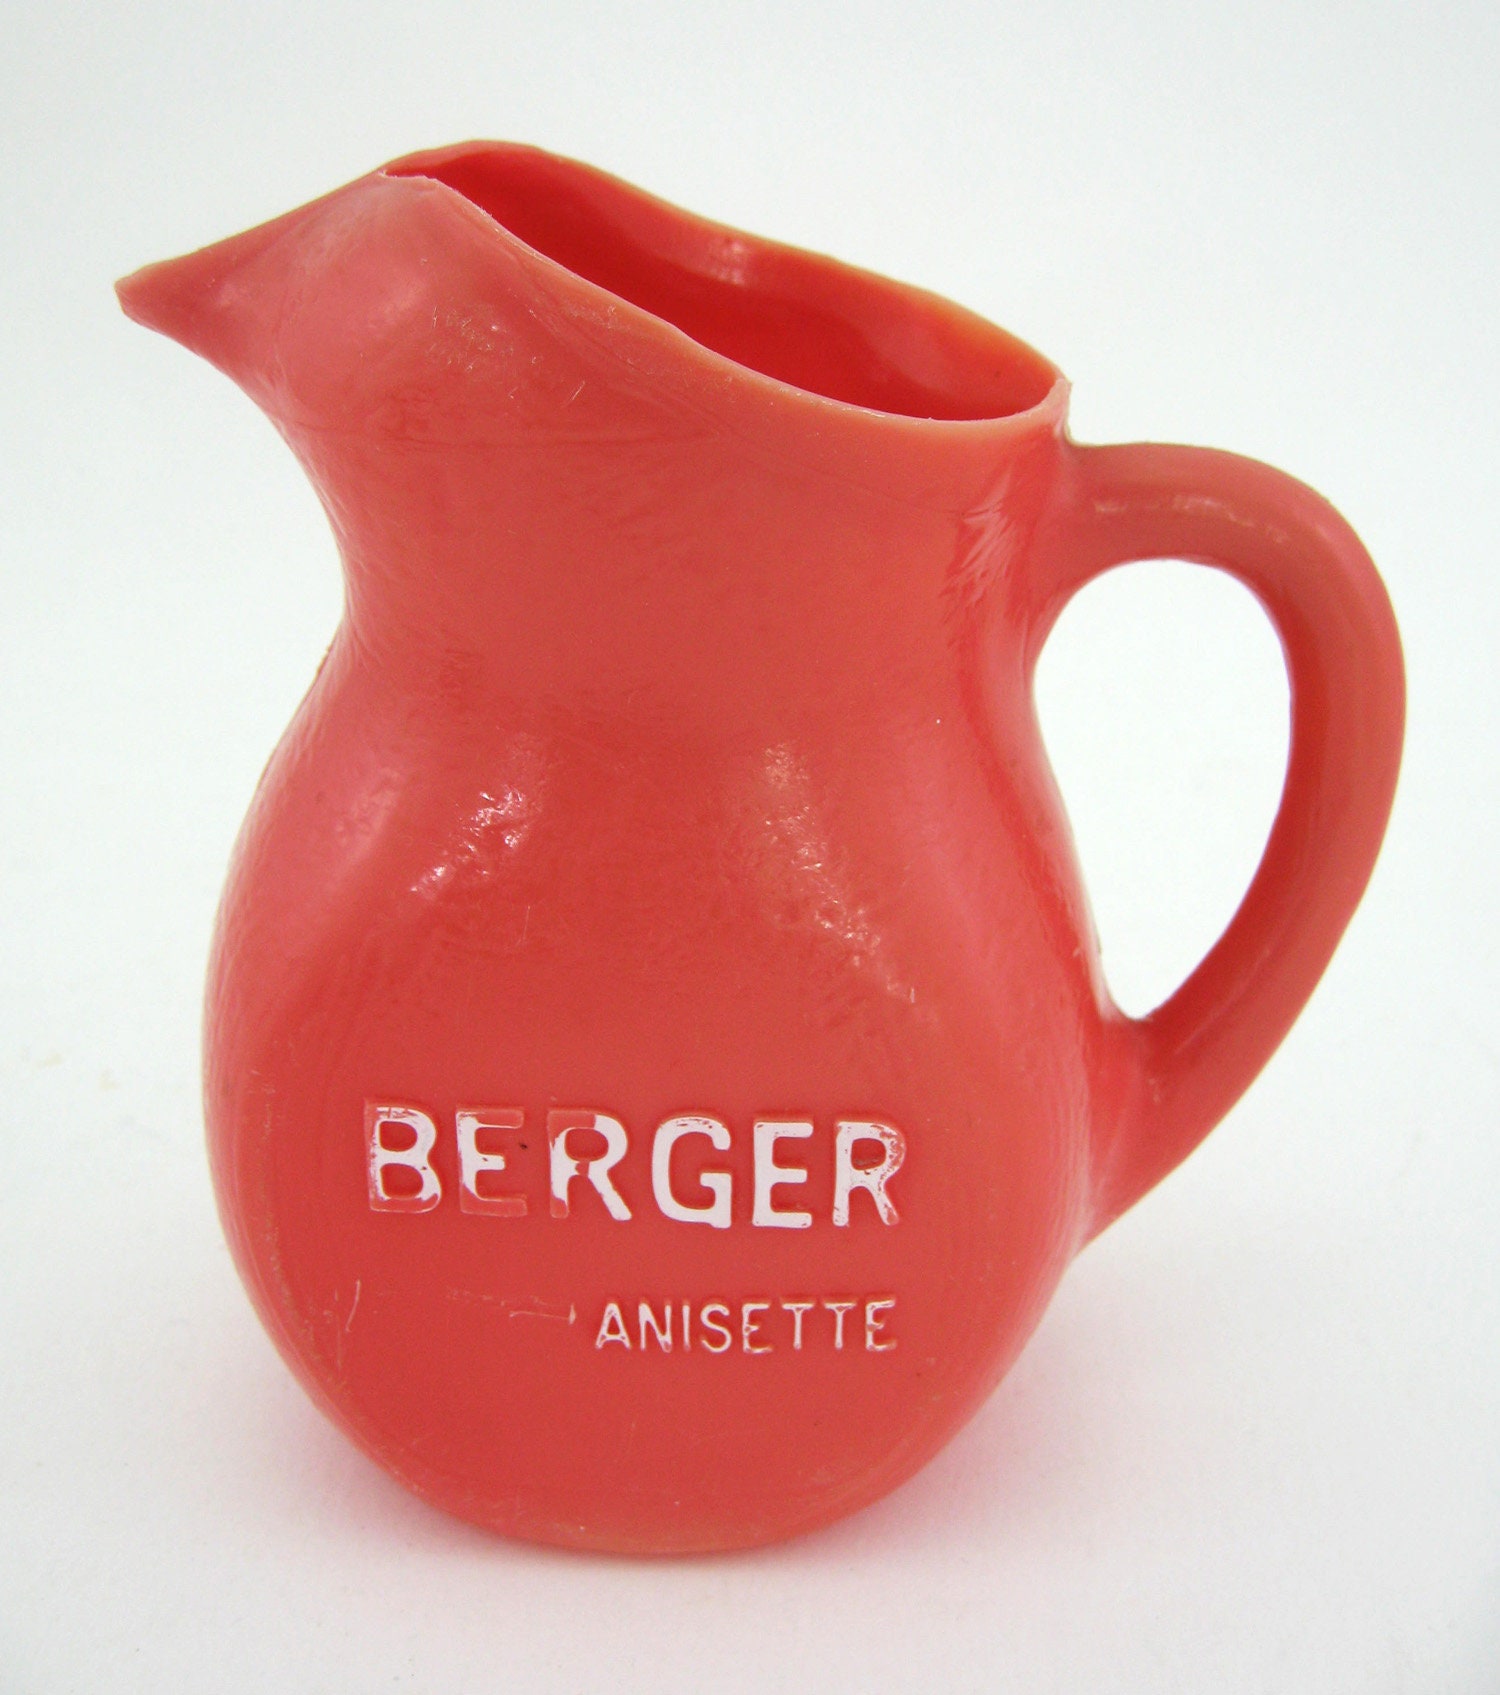 Pichet en Plastique Rouge - Berger Anisette France Vintage Années 60